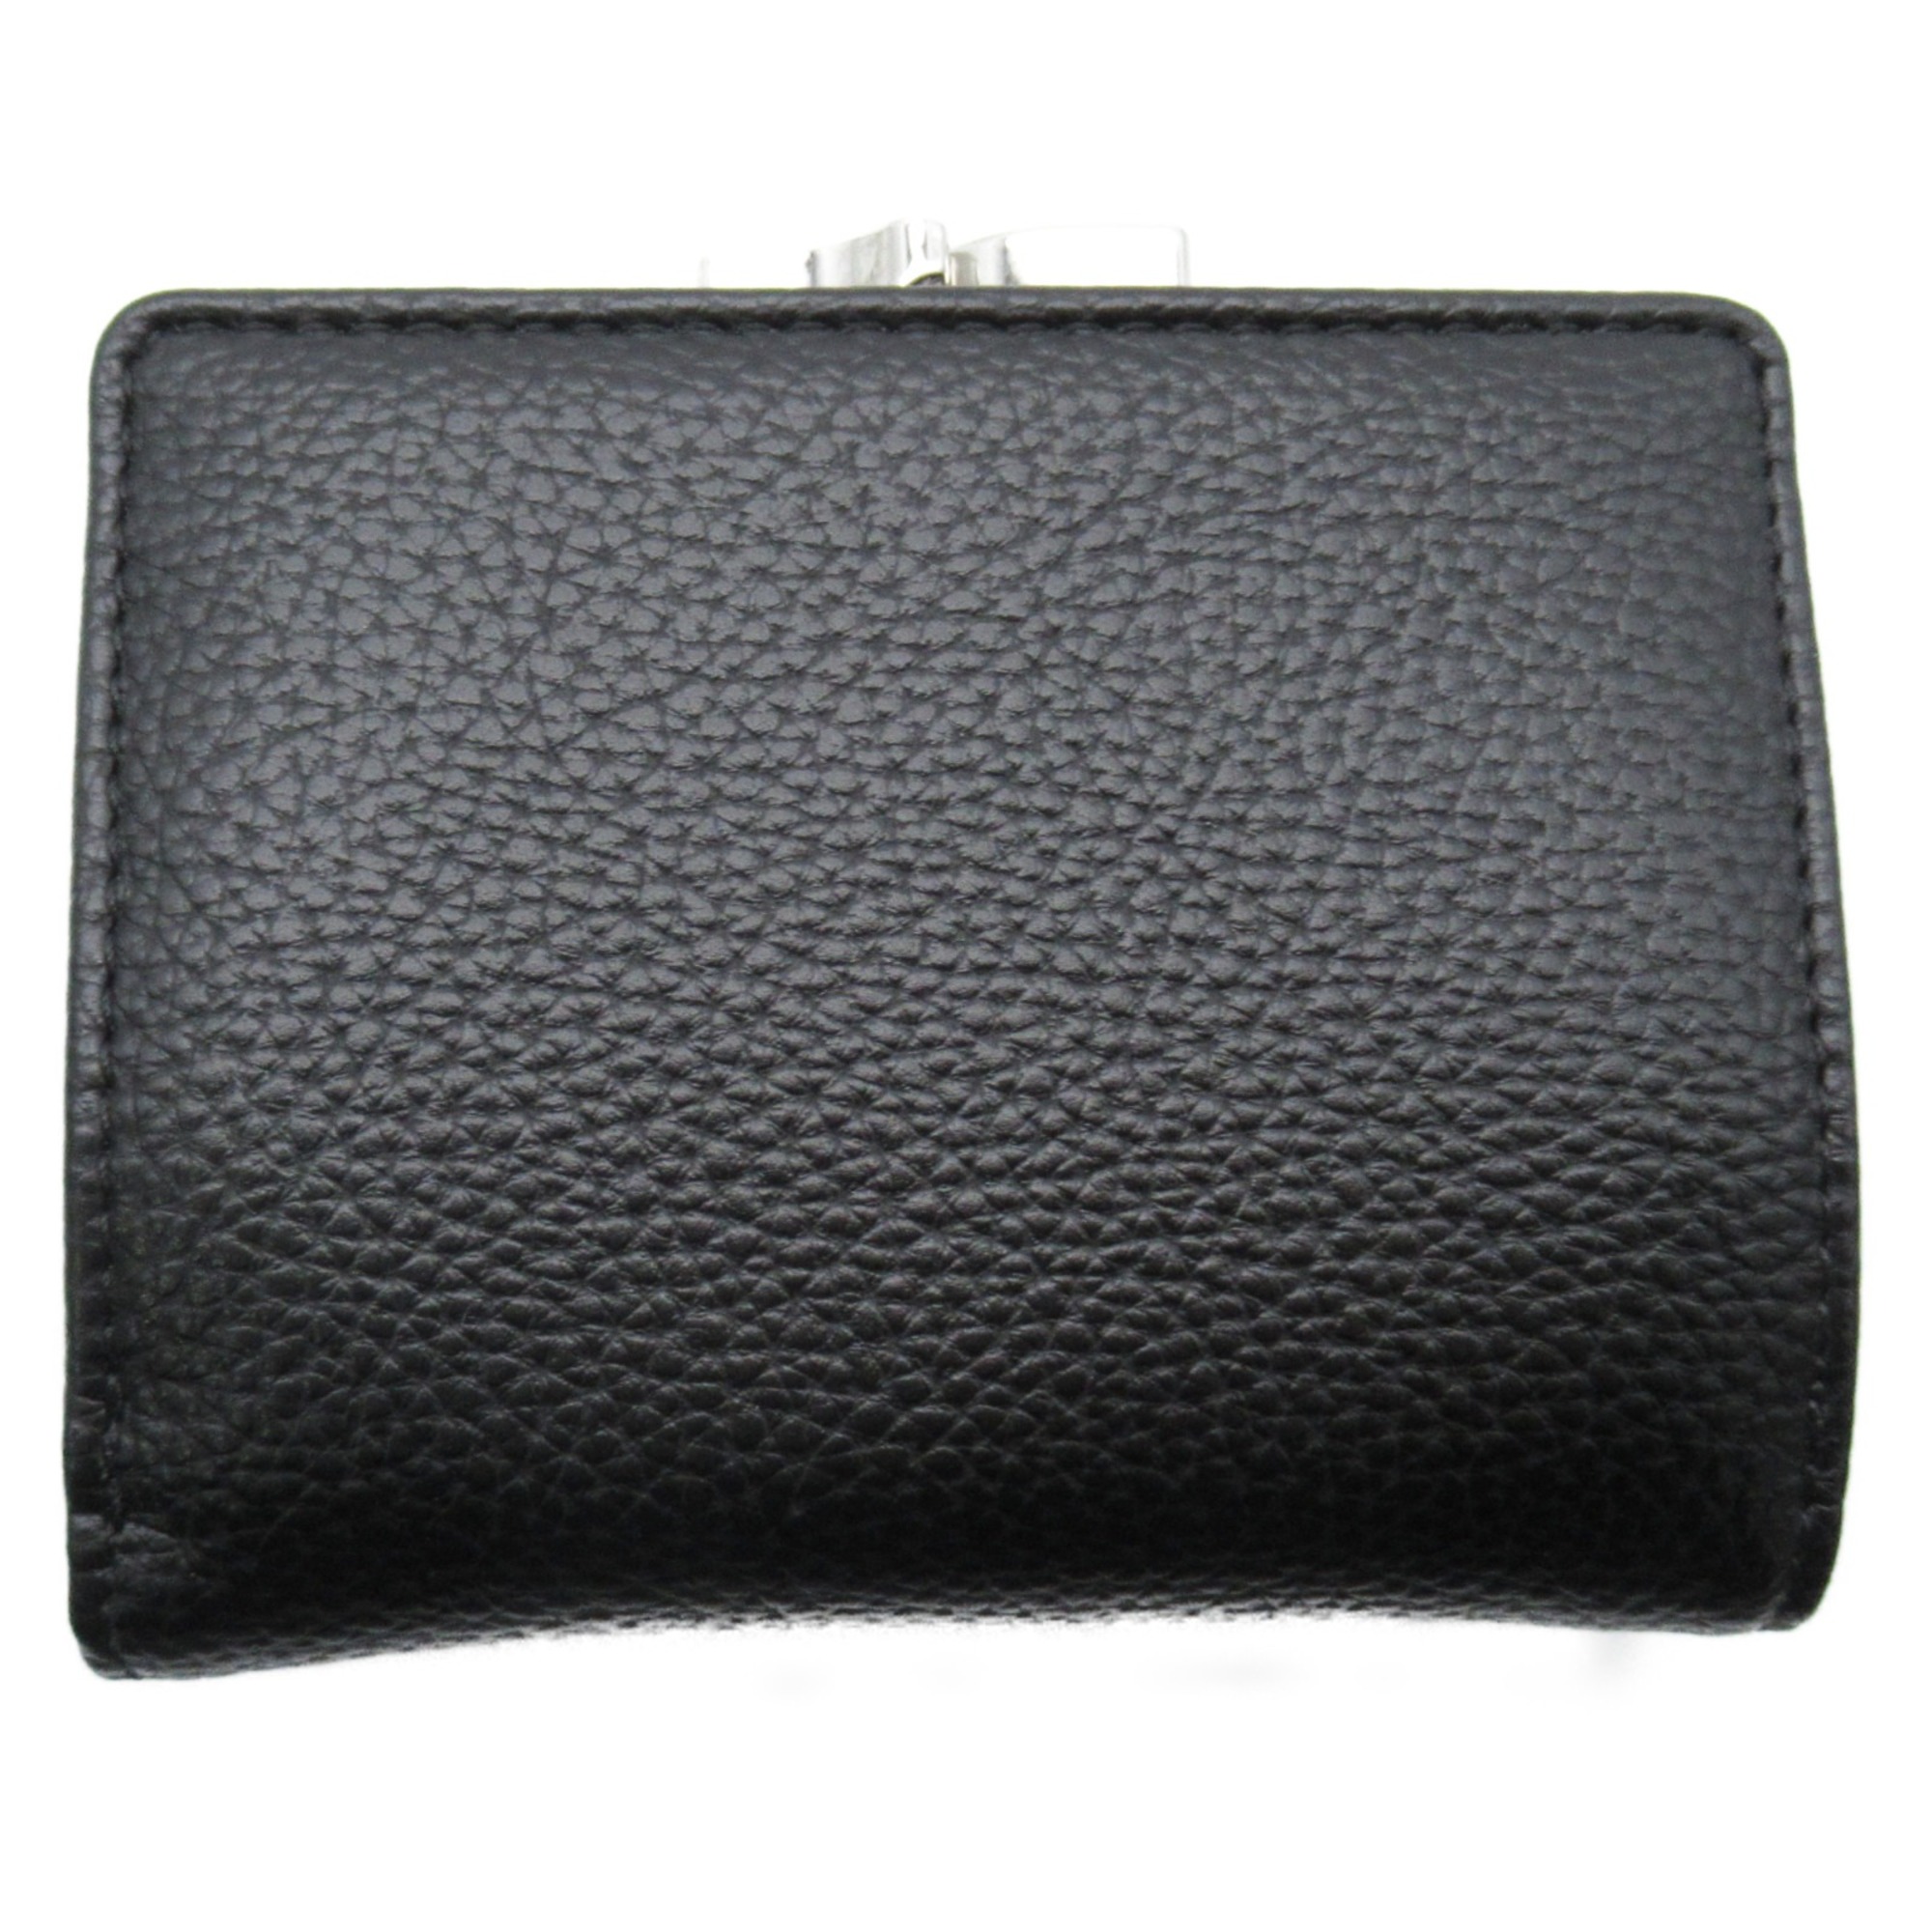 Vivienne Westwood Purse Wallet Black leather Grain leather 51010018S000DN403